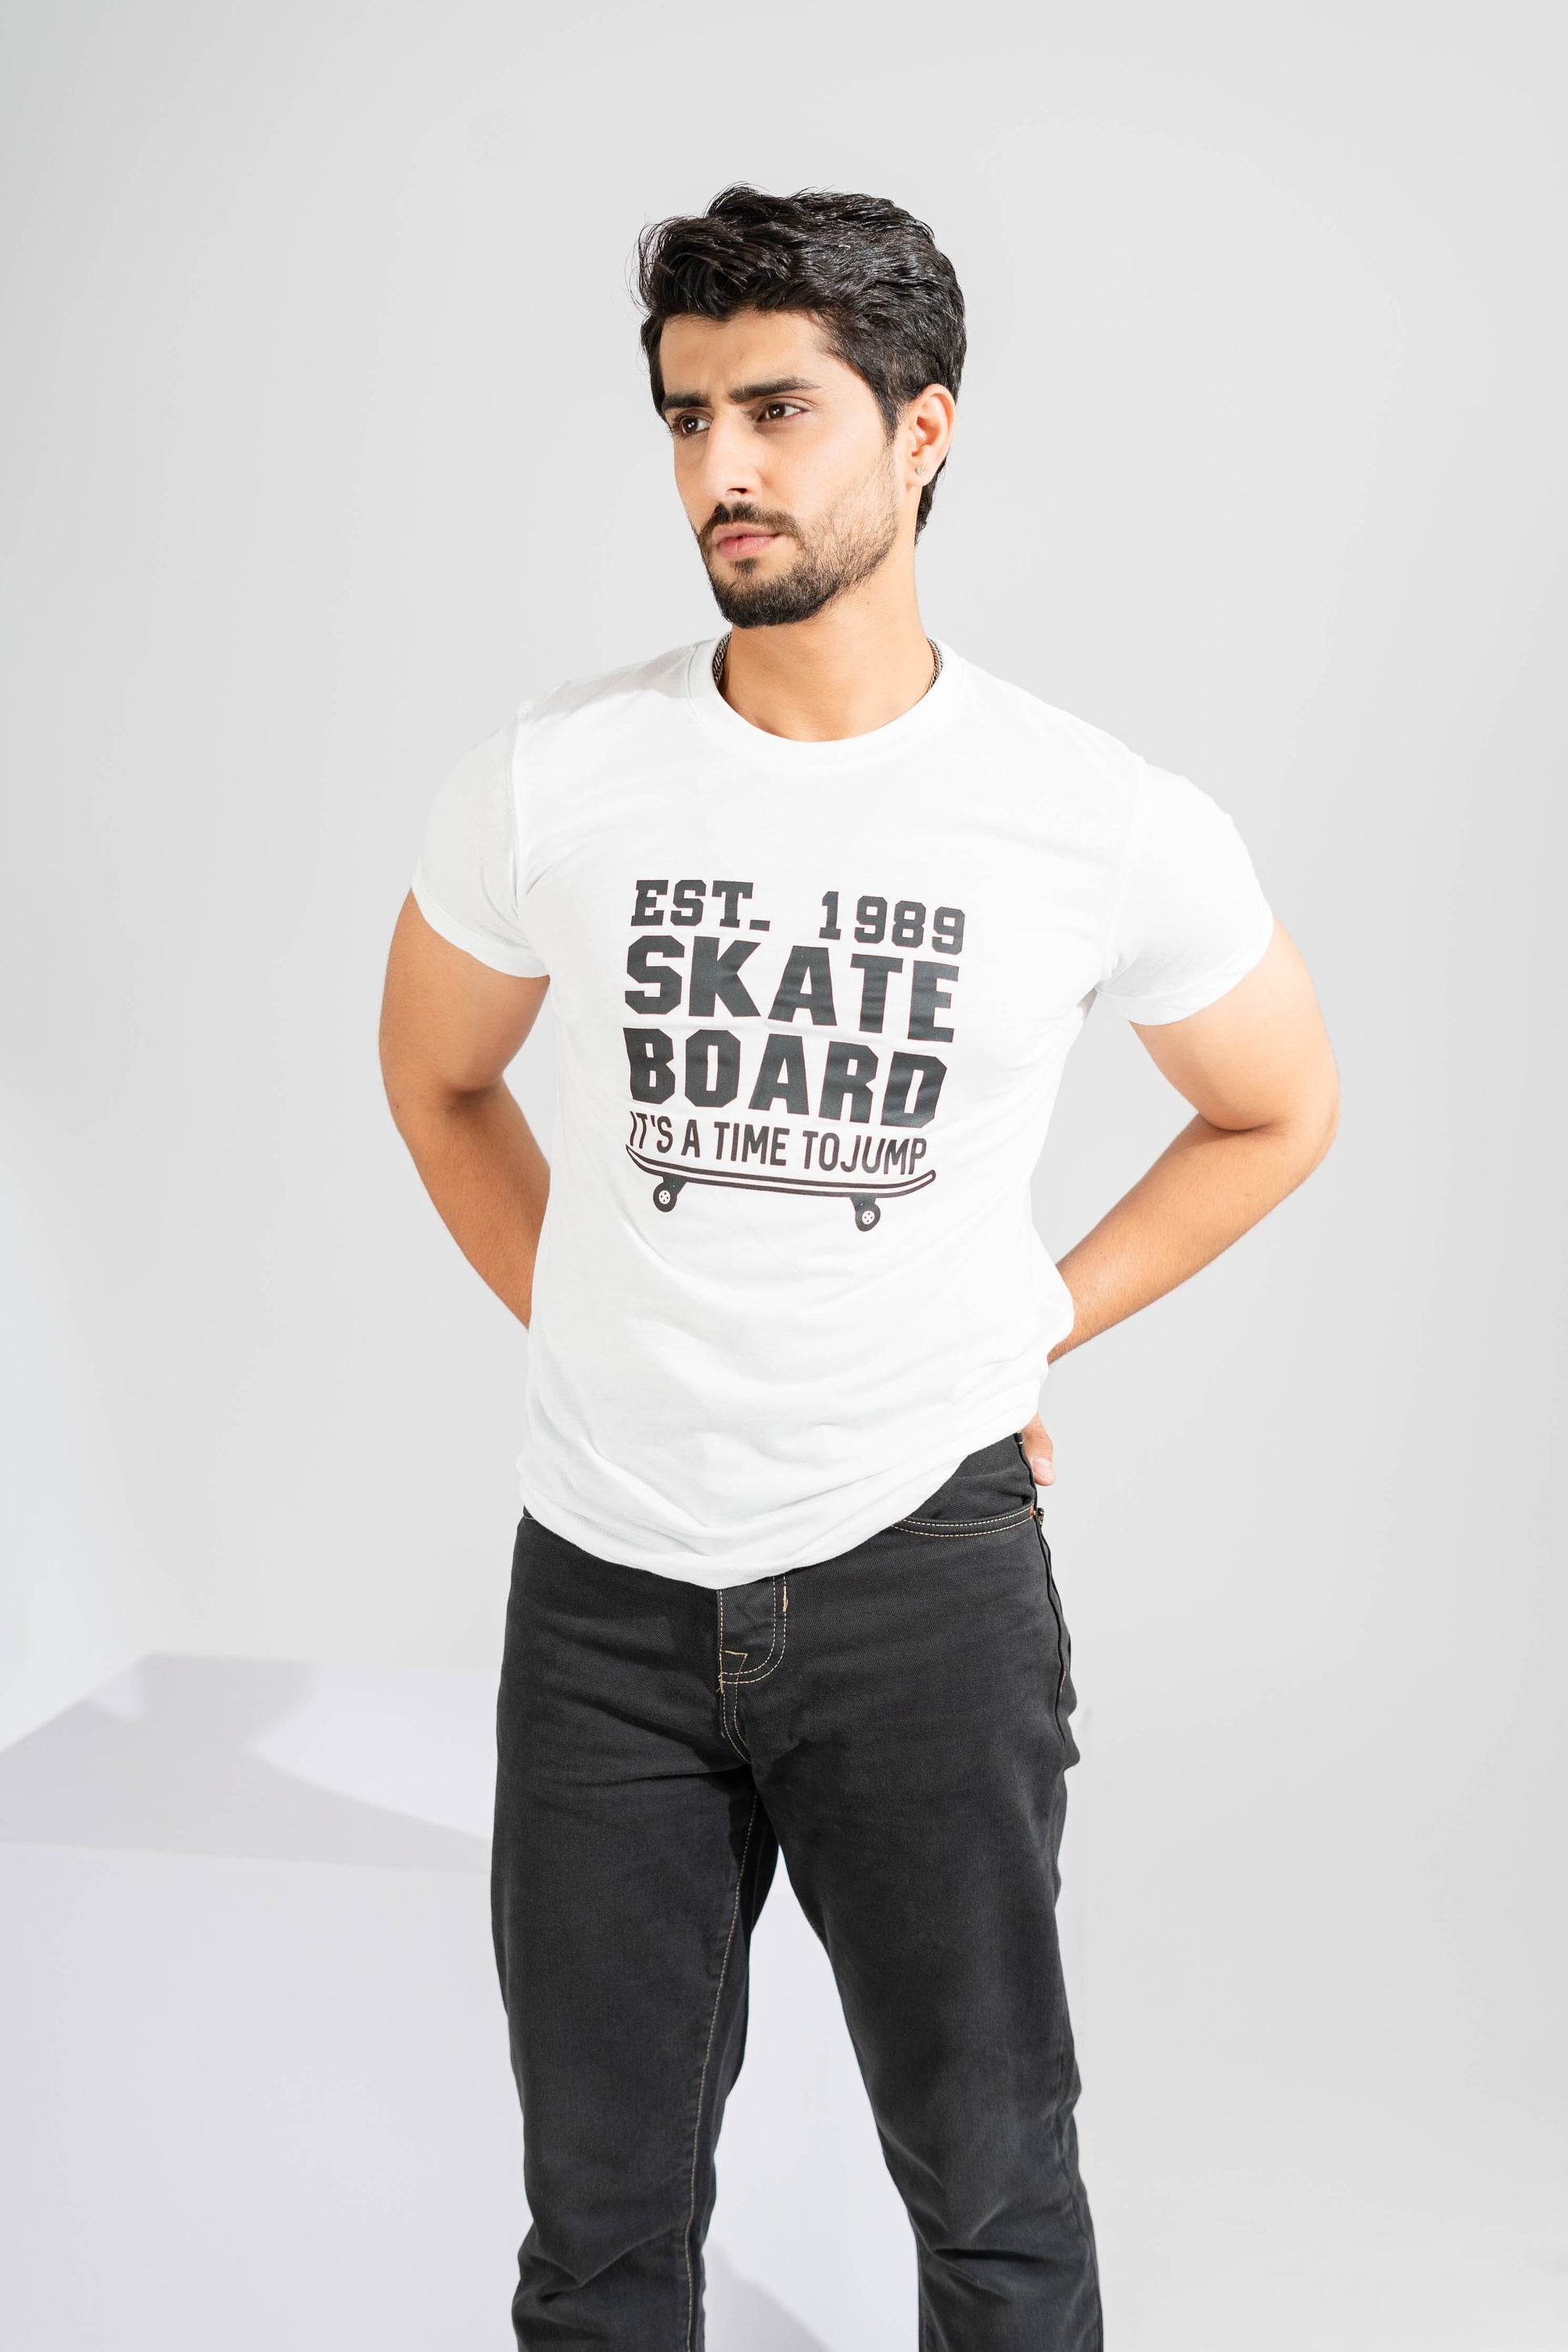 Polo Republica Men's Skate Board Printed Crew Neck Tee Shirt Men's Tee Shirt Polo Republica 